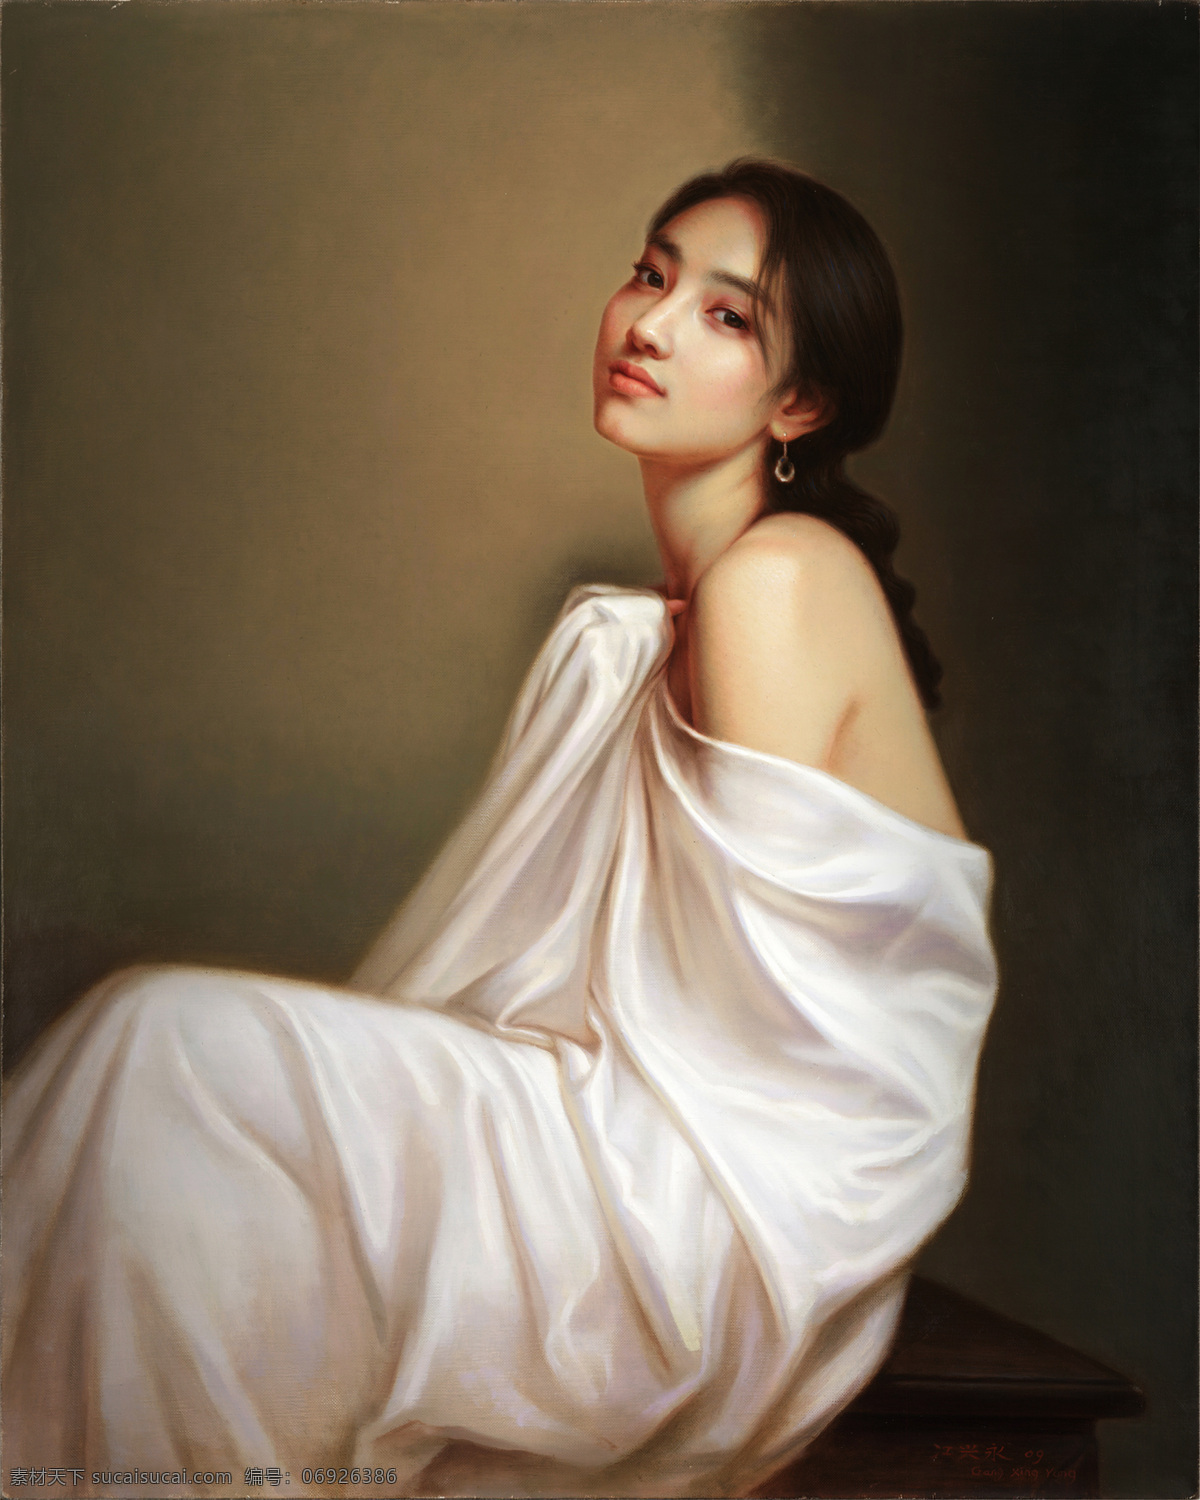 人物油画 肖像油画 文化艺术 人物肖像 中国油画 人像油画 人物装饰画 油画装饰画